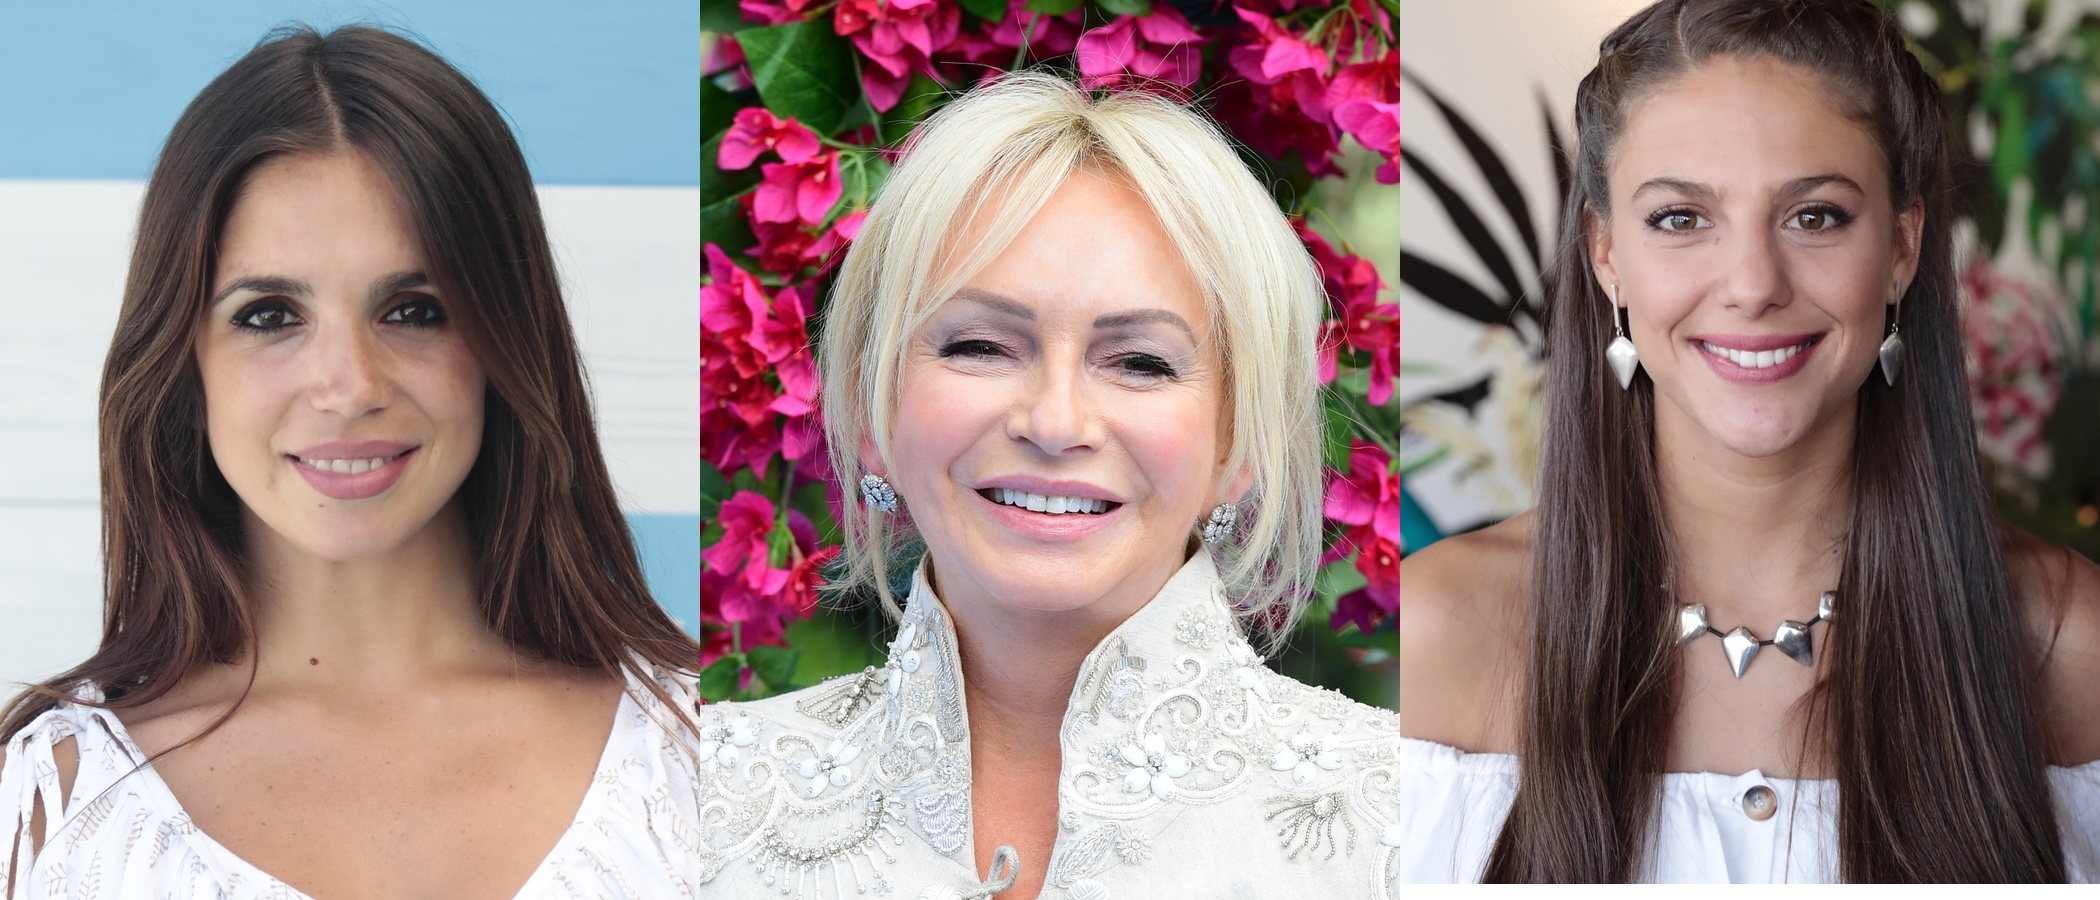 Elena Furiase, Marta Verona y Evangeline Lilly entre los mejores beauty looks de la semana